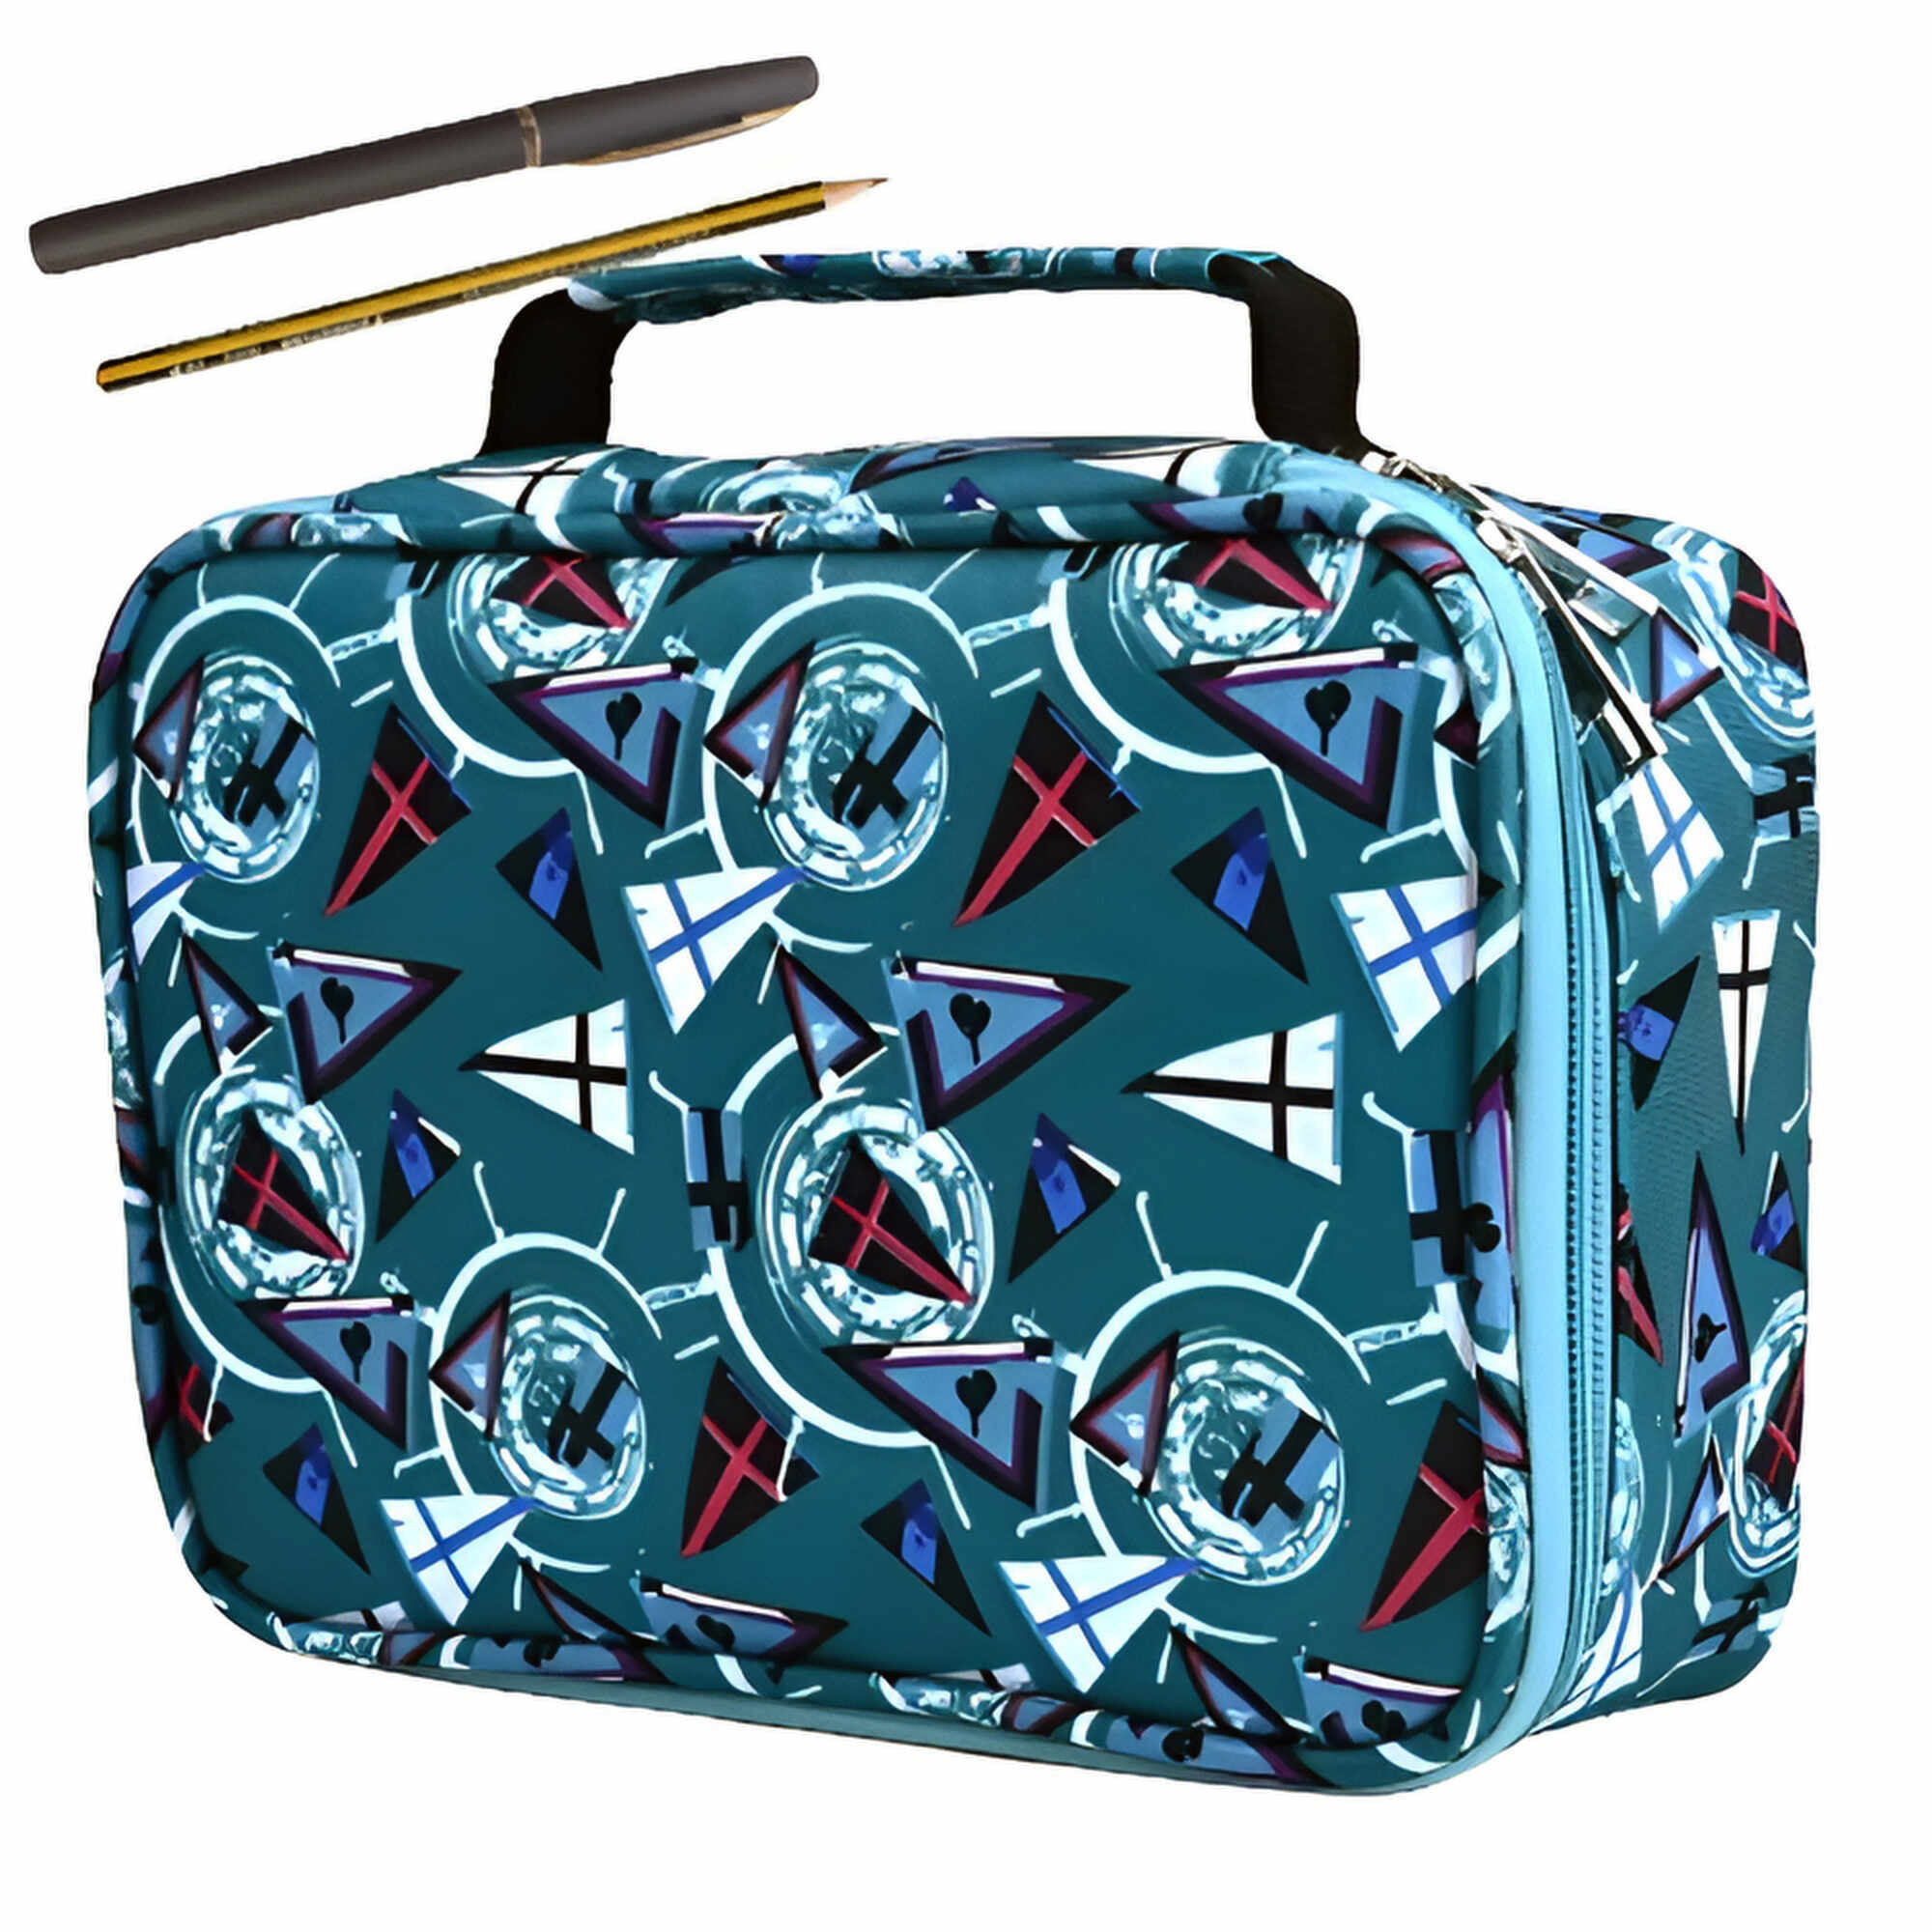 Penar ZEQAS tip geanta cu 4 compartimente, include un creion si un pix, capacitate 72 accesorii, lavabil, cu maner, culoare albastru,